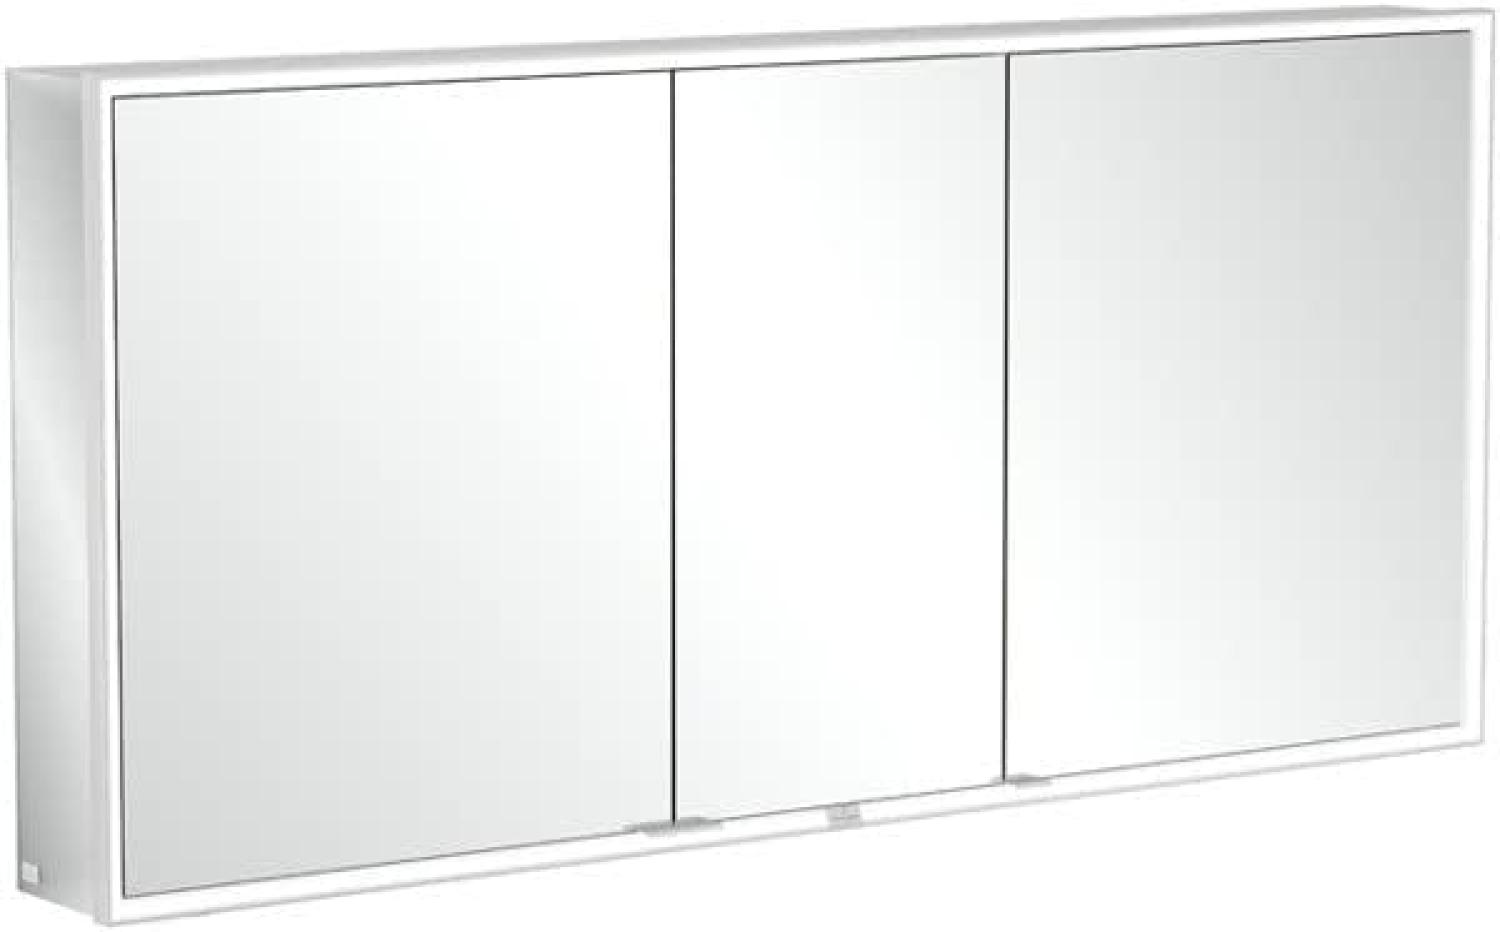 Villeroy & Boch My View Now, Spiegelschrank für Aufputz, mit Beleuchtung, 1600x750x168 mm, mit Sensordimmer, 3 Türen, A45516 - A4551600 Bild 1